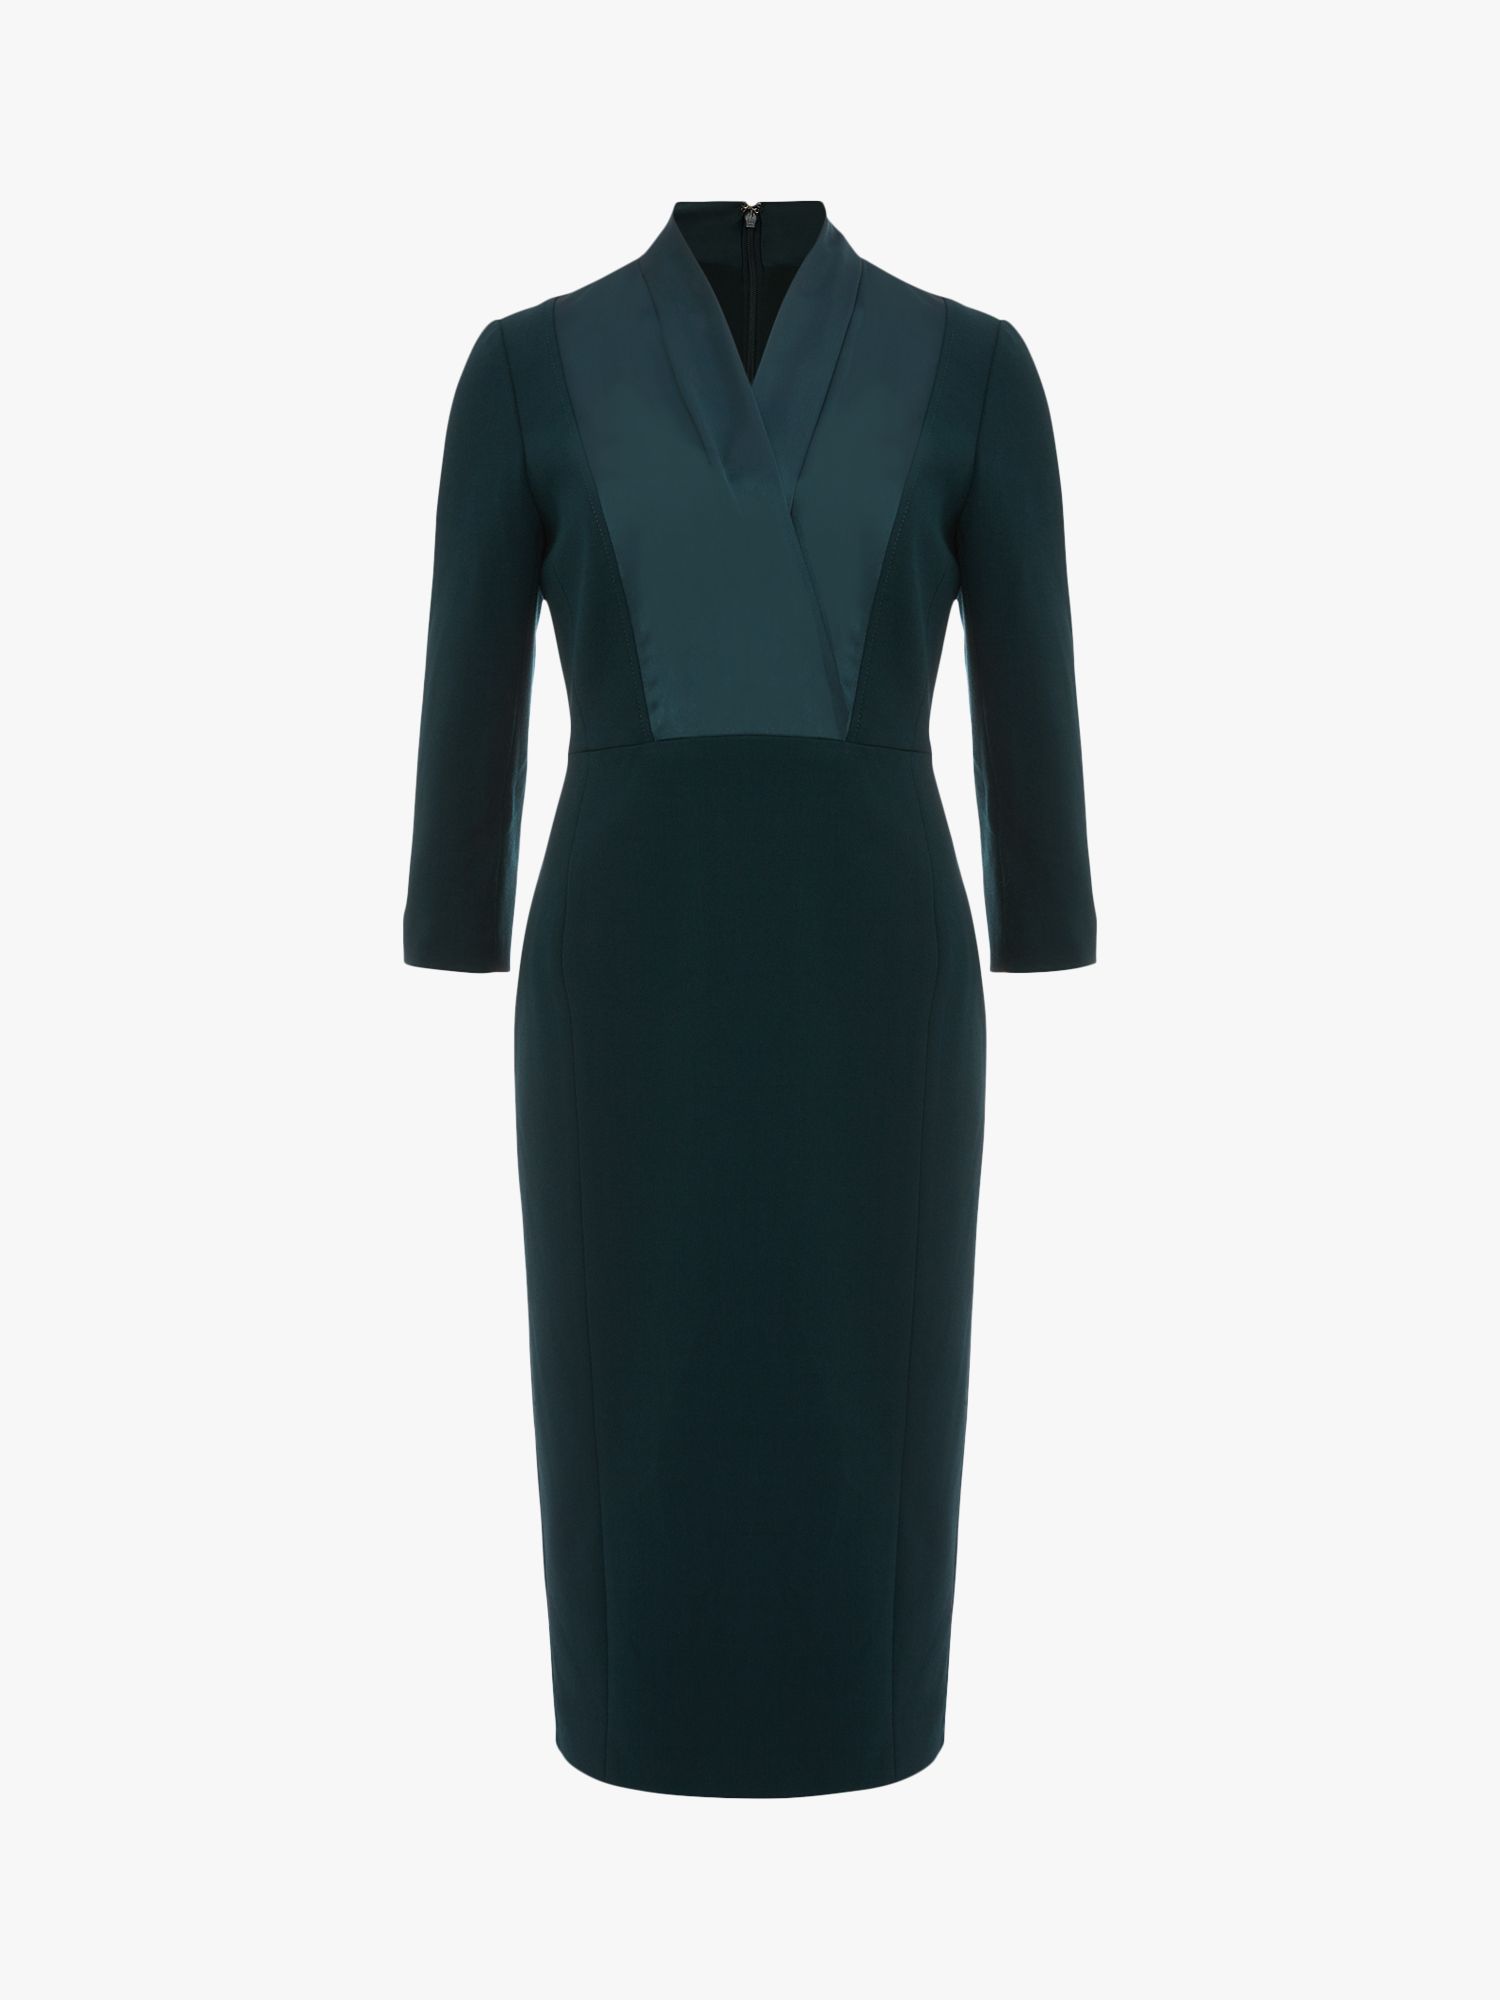 Hobbs Alisa Knee Length Dress, Dark Green at John Lewis & Partners